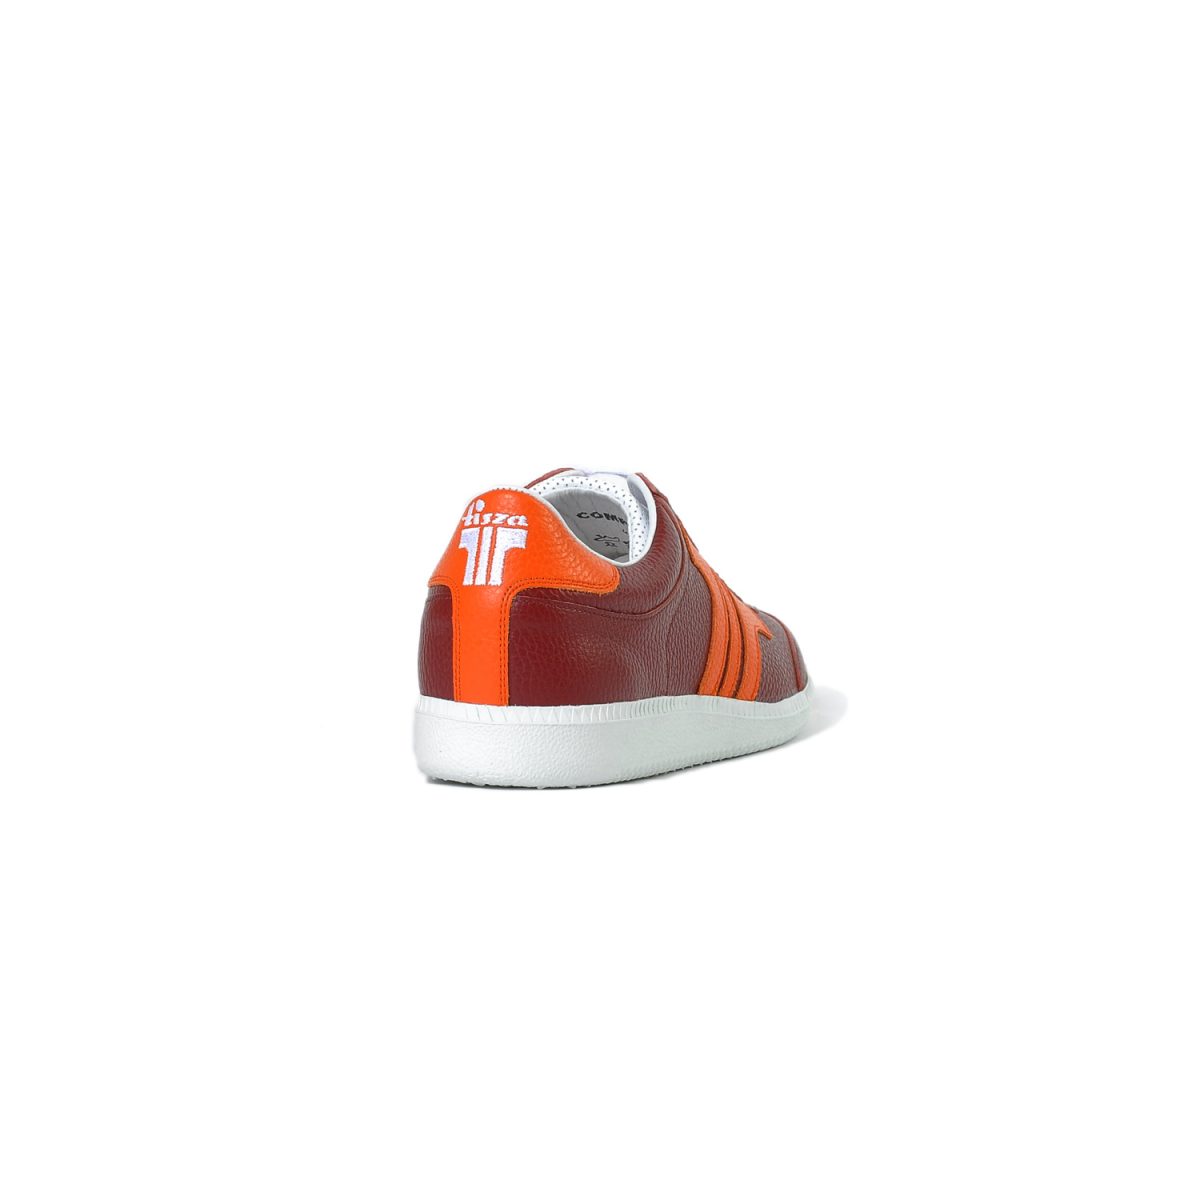 Tisza shoes - Compakt - Burgundy-orange